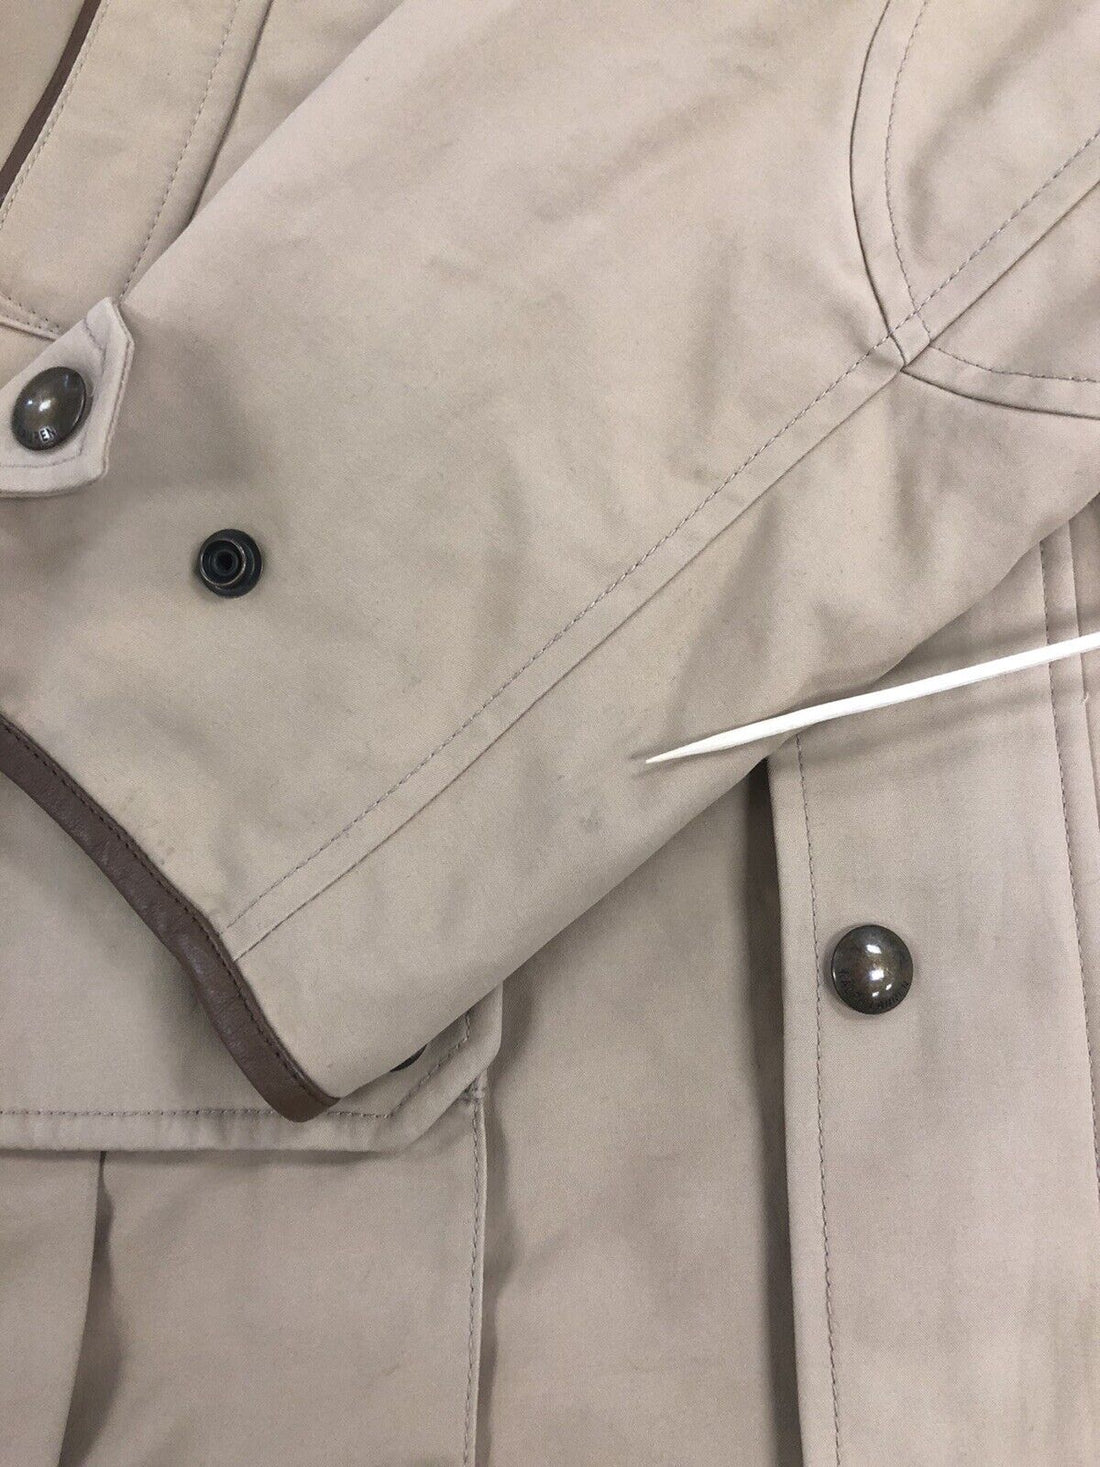 Vintage Polo Ralph Lauren Coat Jacket Size Large Beige Tan Cotton Utility Cargo